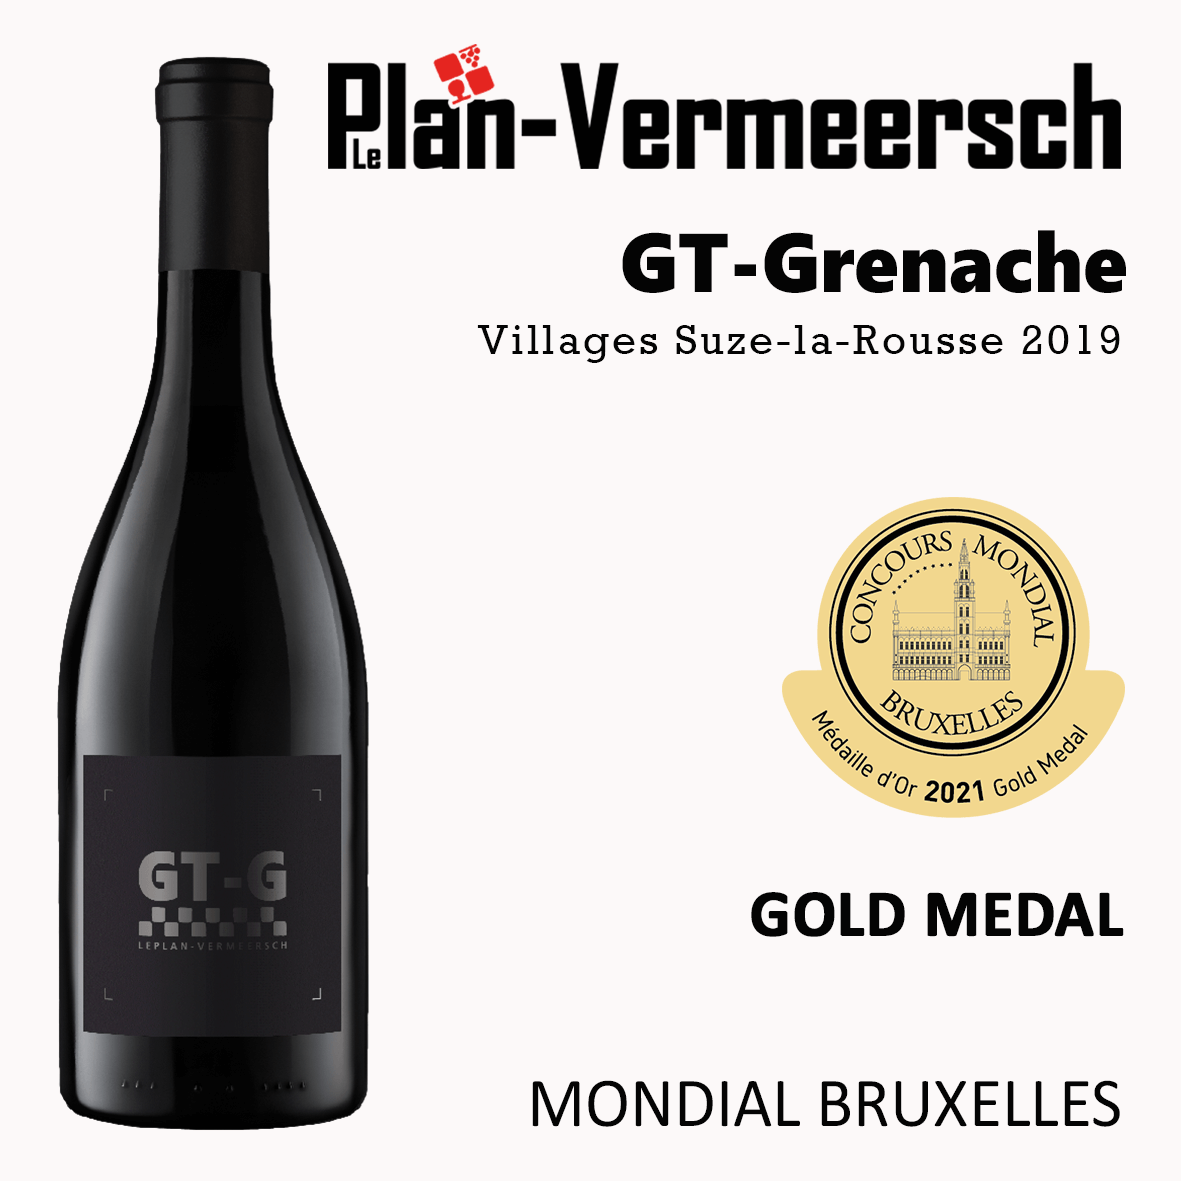 Bouteille de vin Grenache GT -Grenache mondial Bruxelles médaille d'or LePlan-Vermeersch